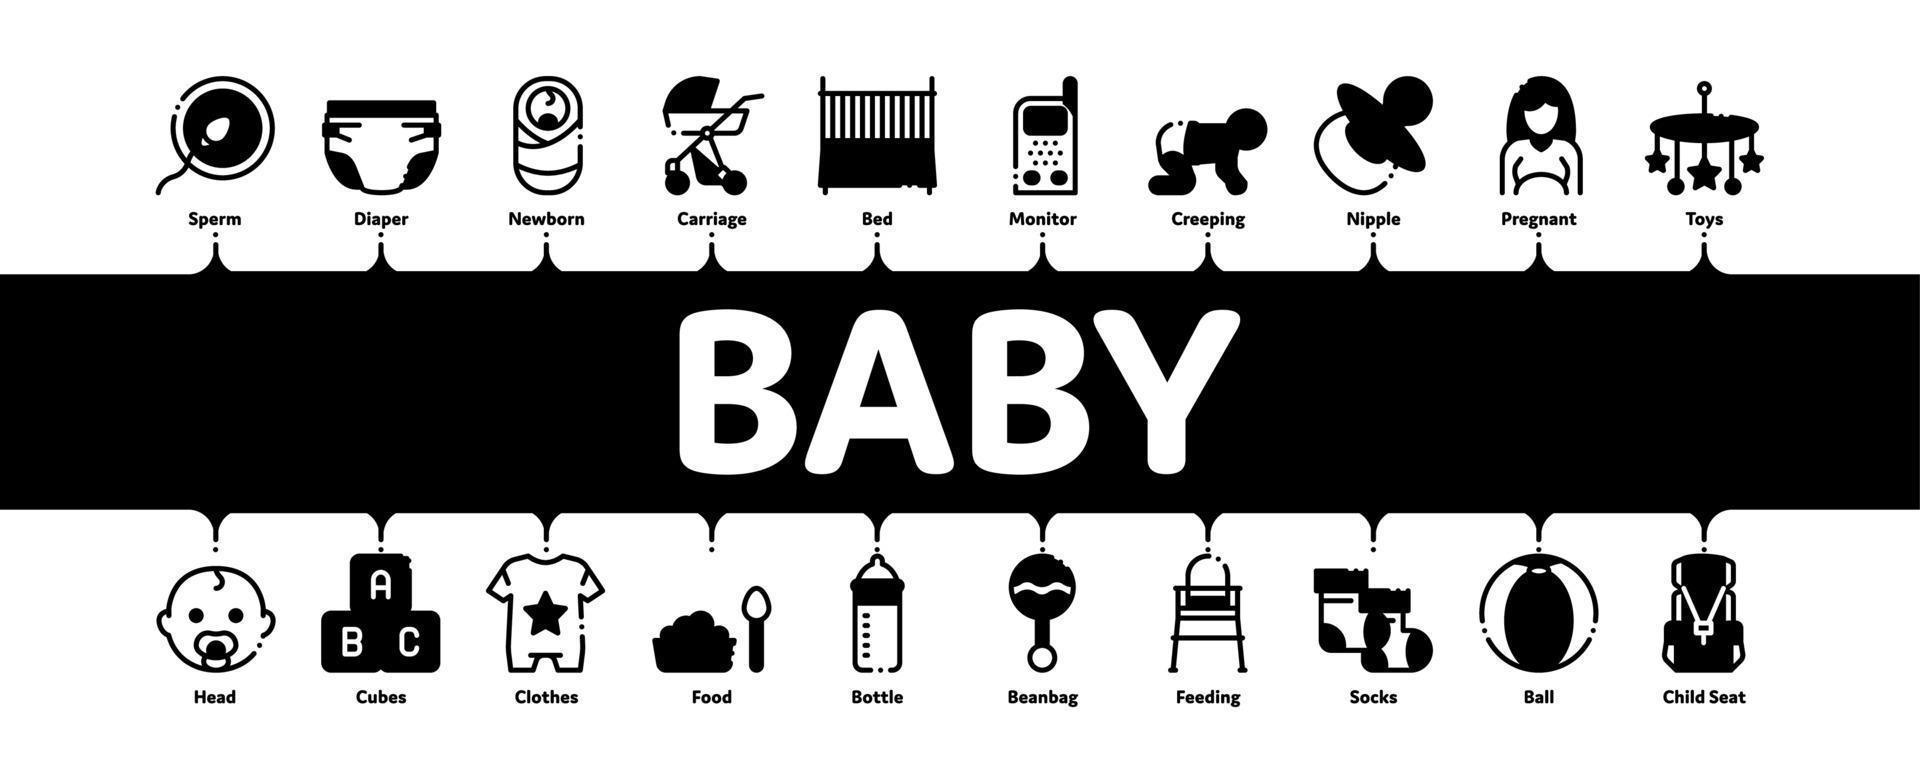 bebis kläder och verktyg minimal infographic baner vektor